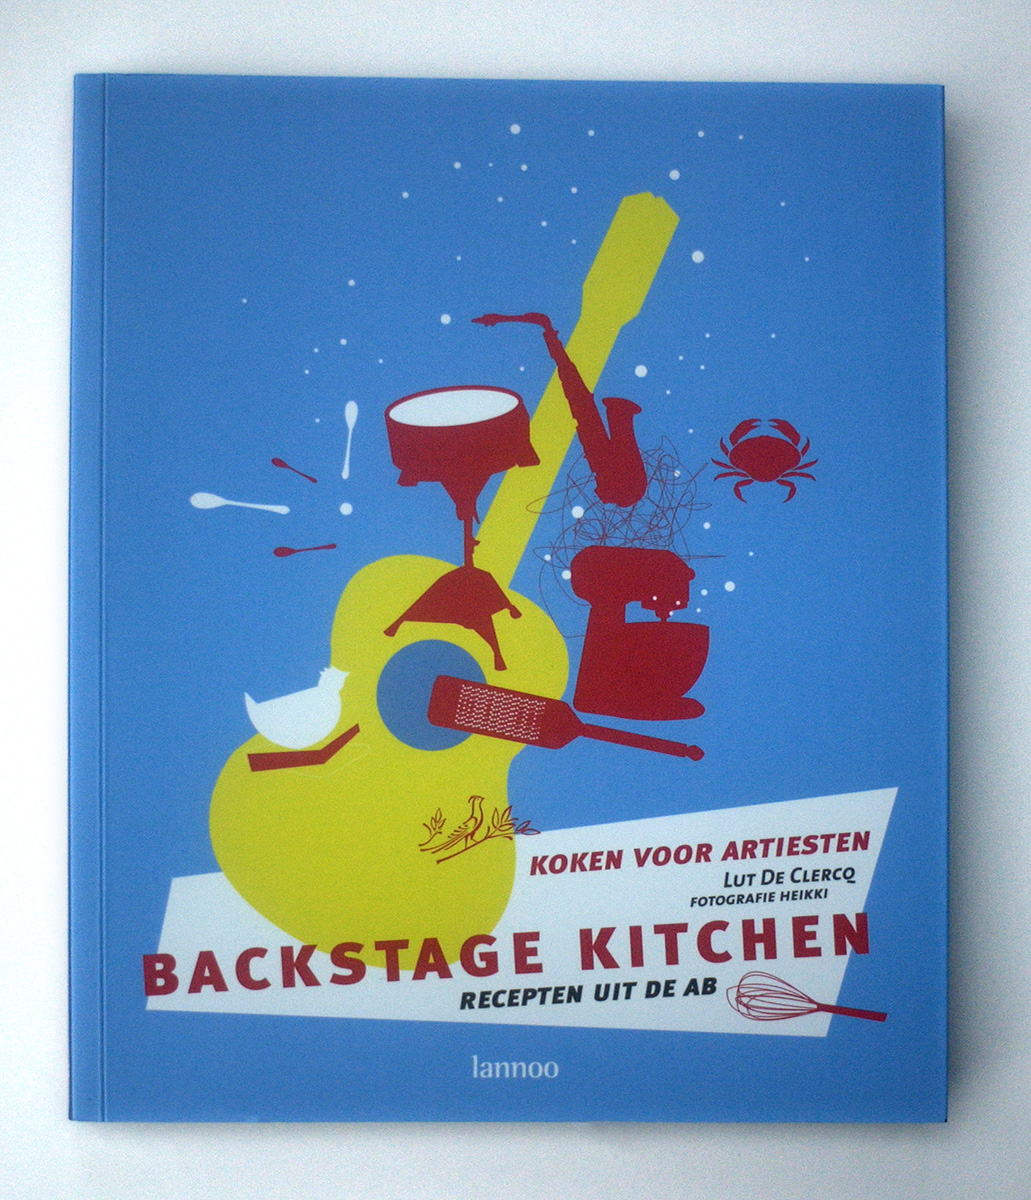 Backstage Kitchen